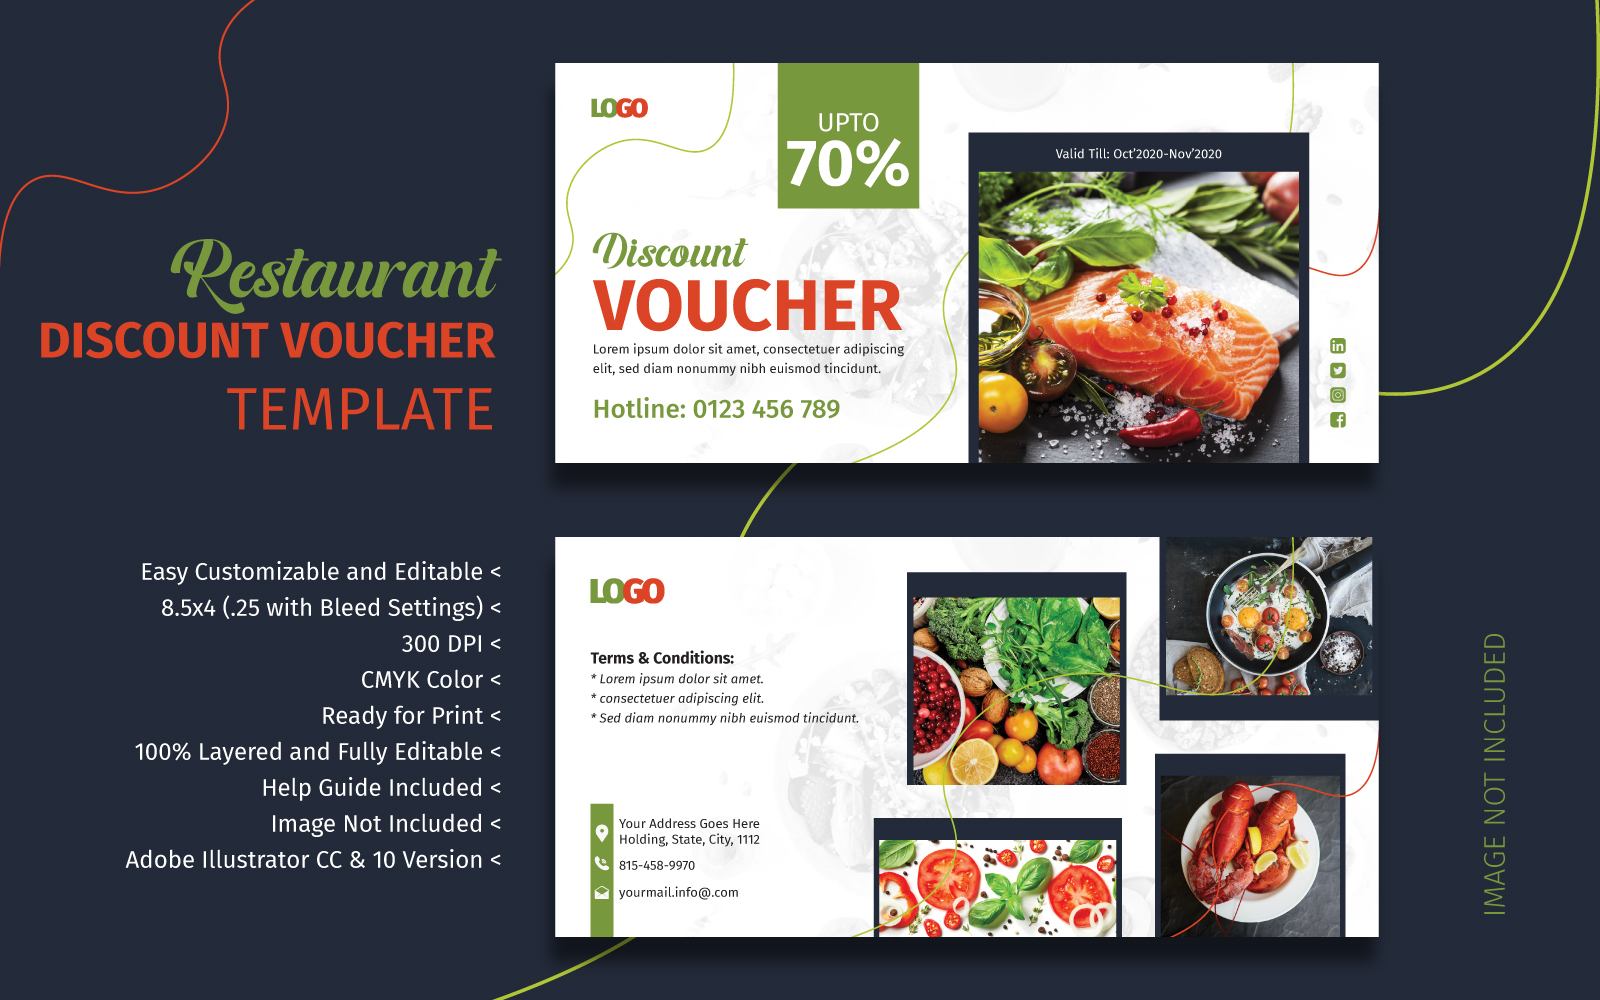 Restaurant Discount Voucher Template - Vector Image